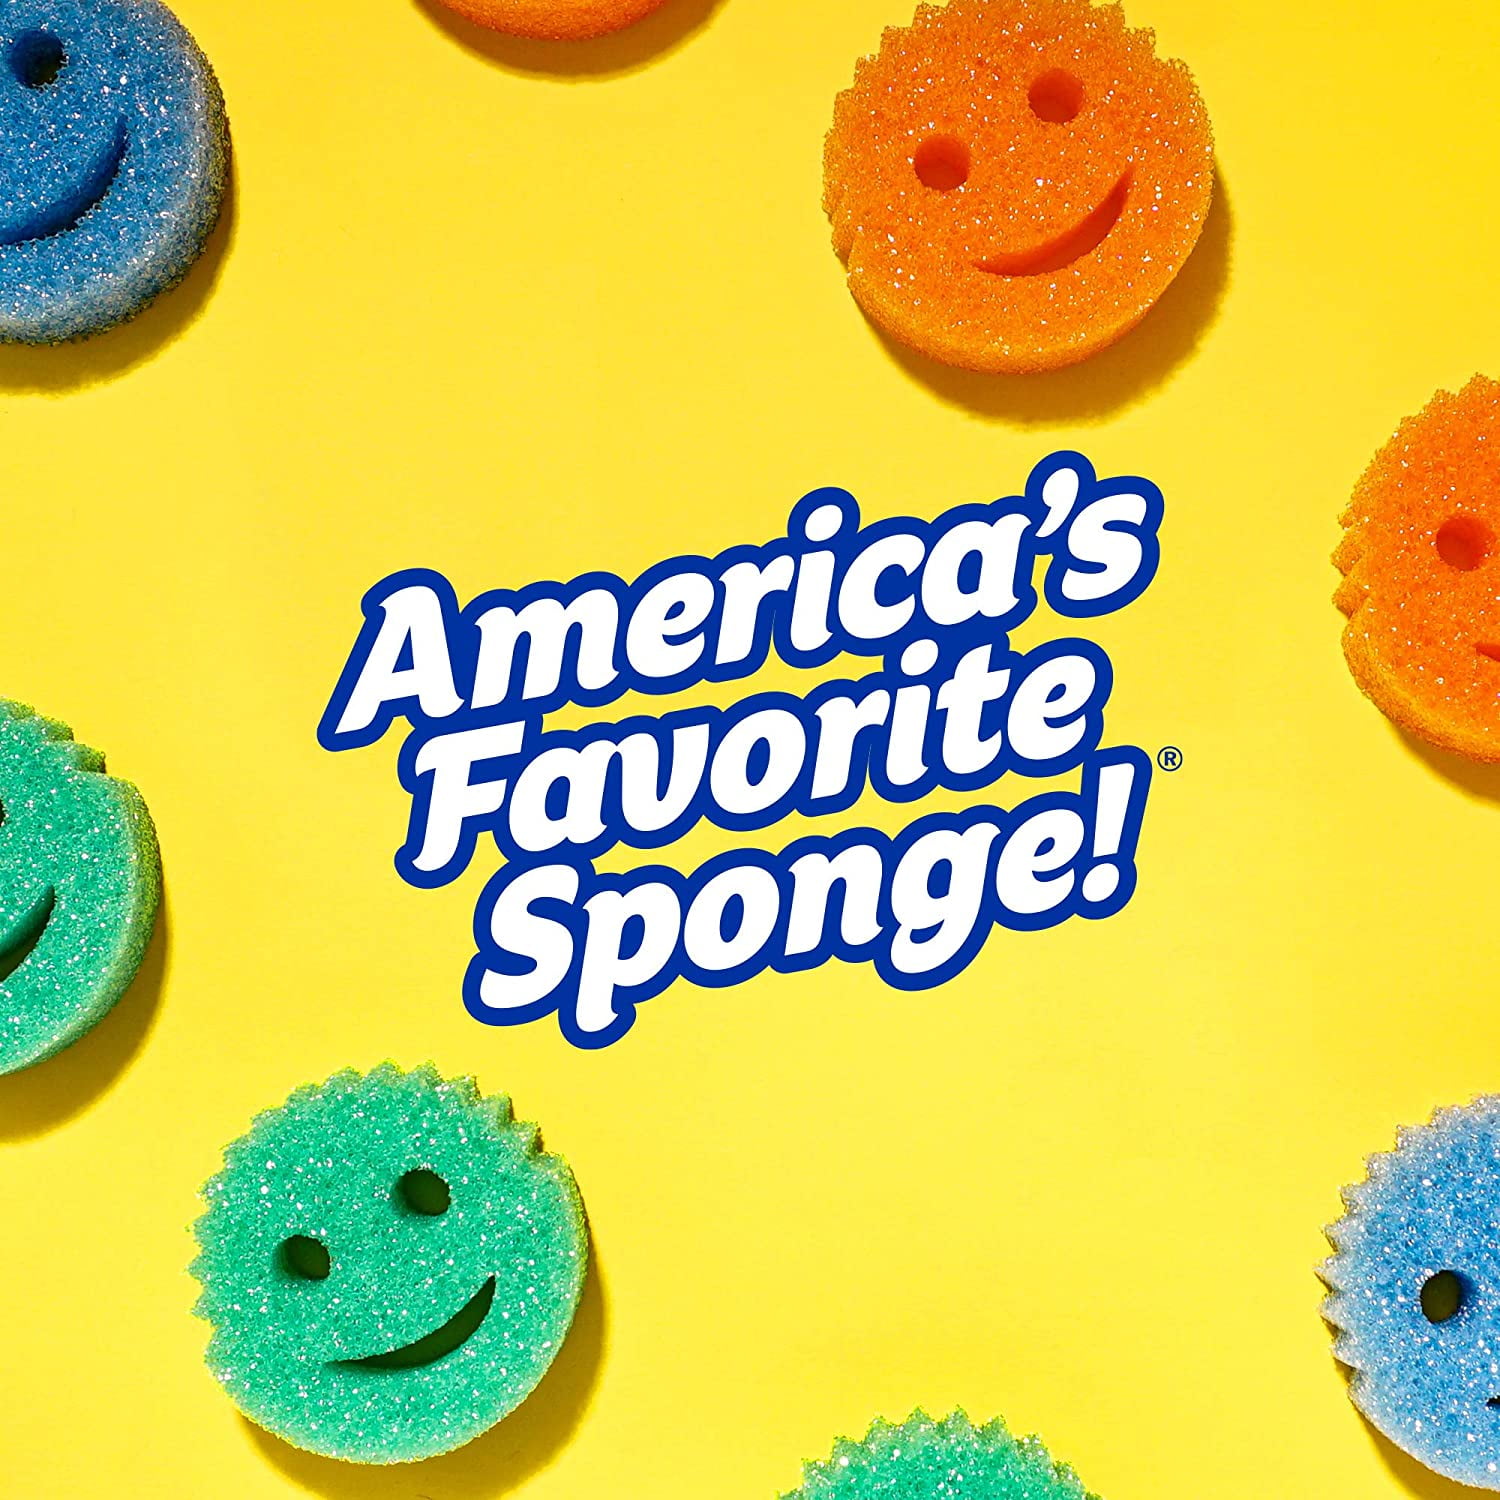 Sponge Daddy Dye Free Sponges 3 Pack (Pack of 2-6 Sponges Total)